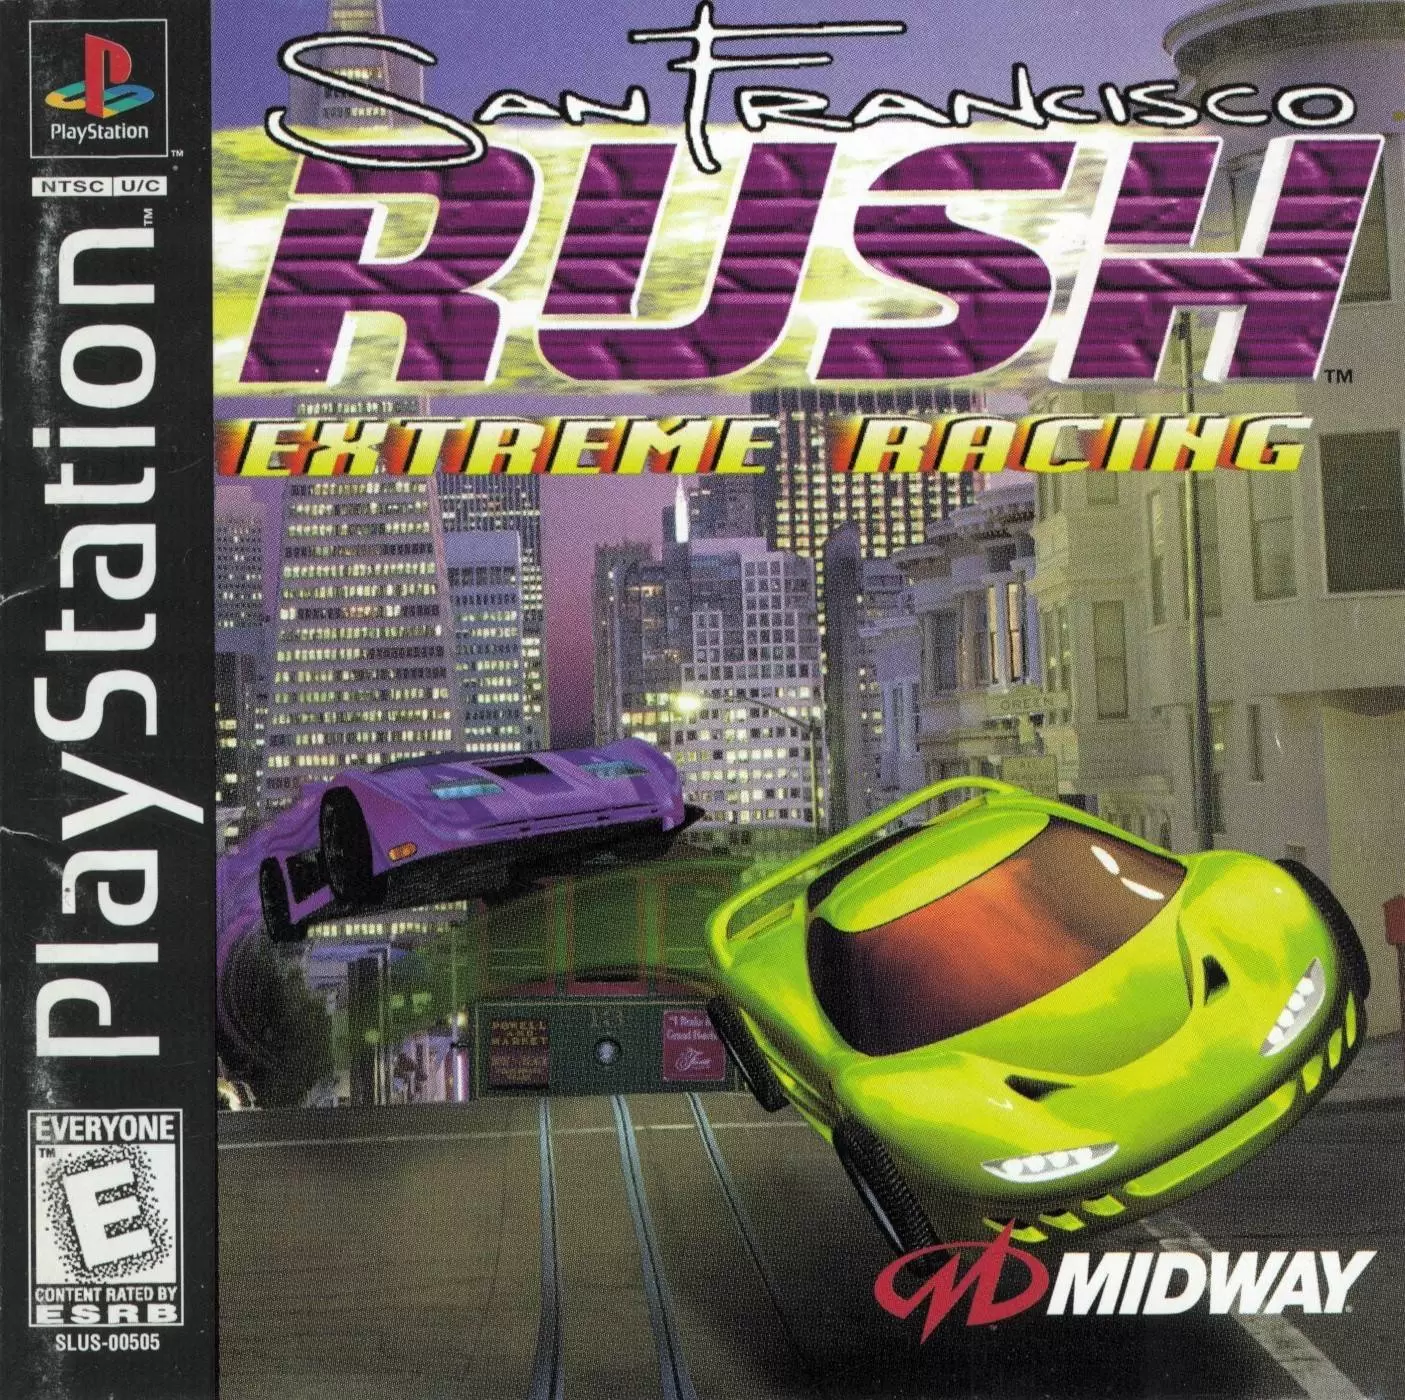 Playstation games - San Francisco Rush: Extreme Racing